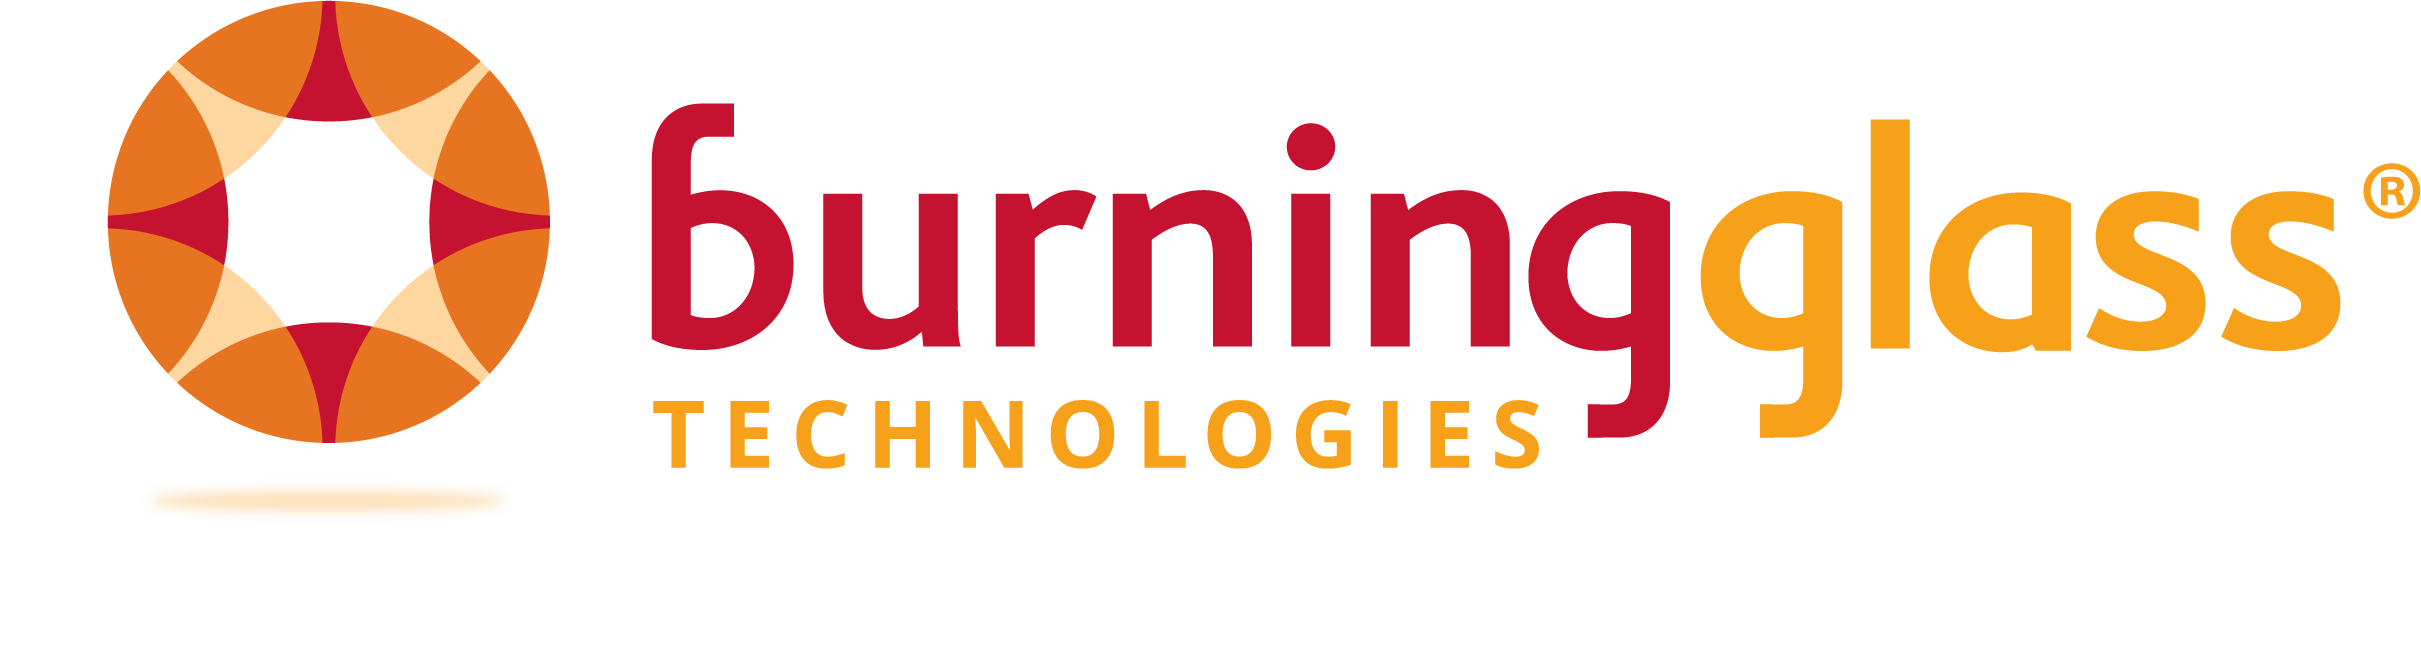 Sponsored webcast from Burning Glass' sponsorship 